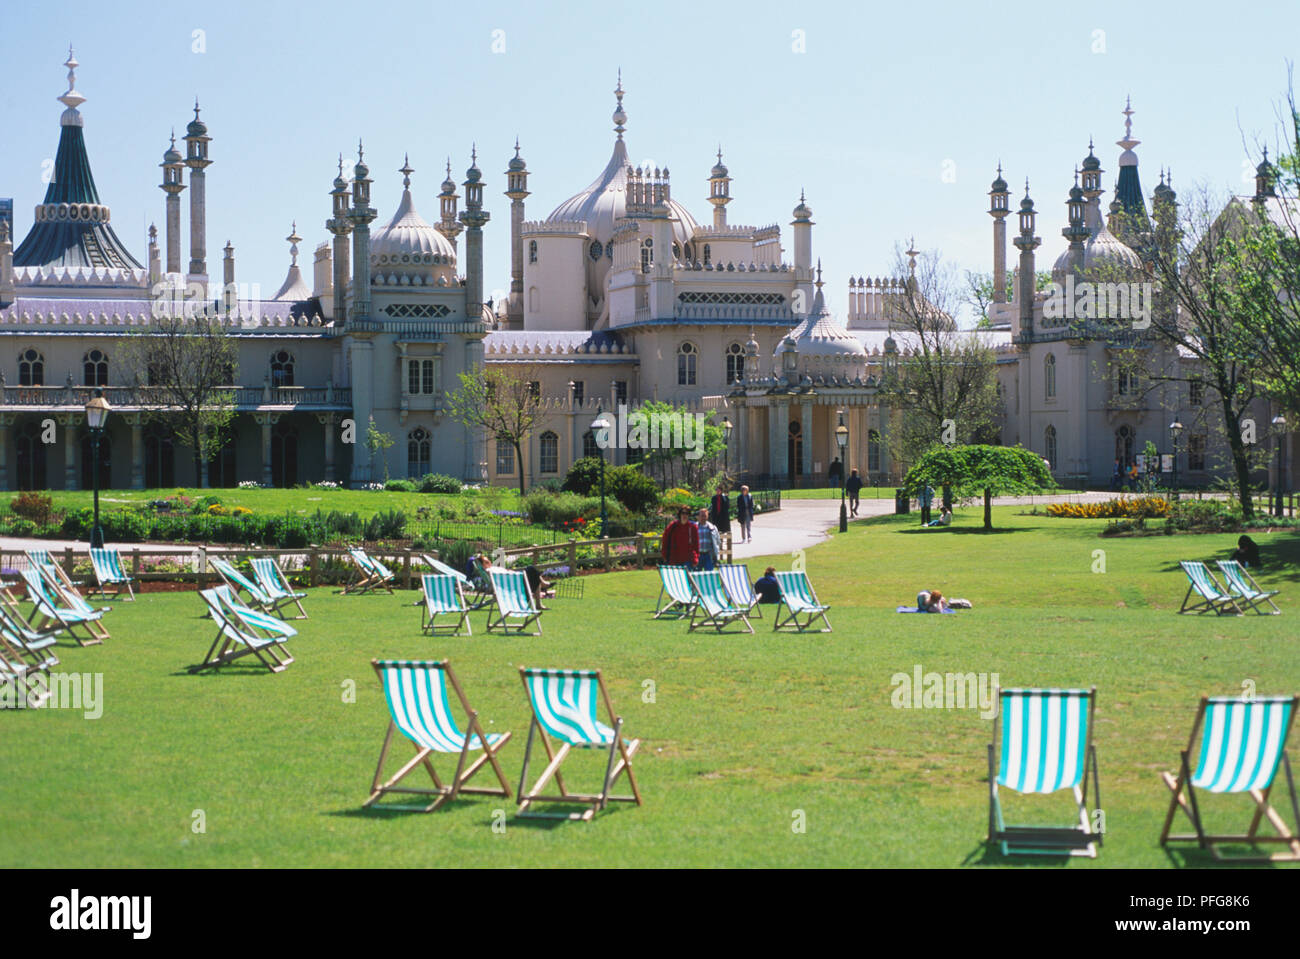 Grossbritannien, England, Brighton, Royal Pavilion, großes Gebäude auf orientalische Themen. Stockfoto